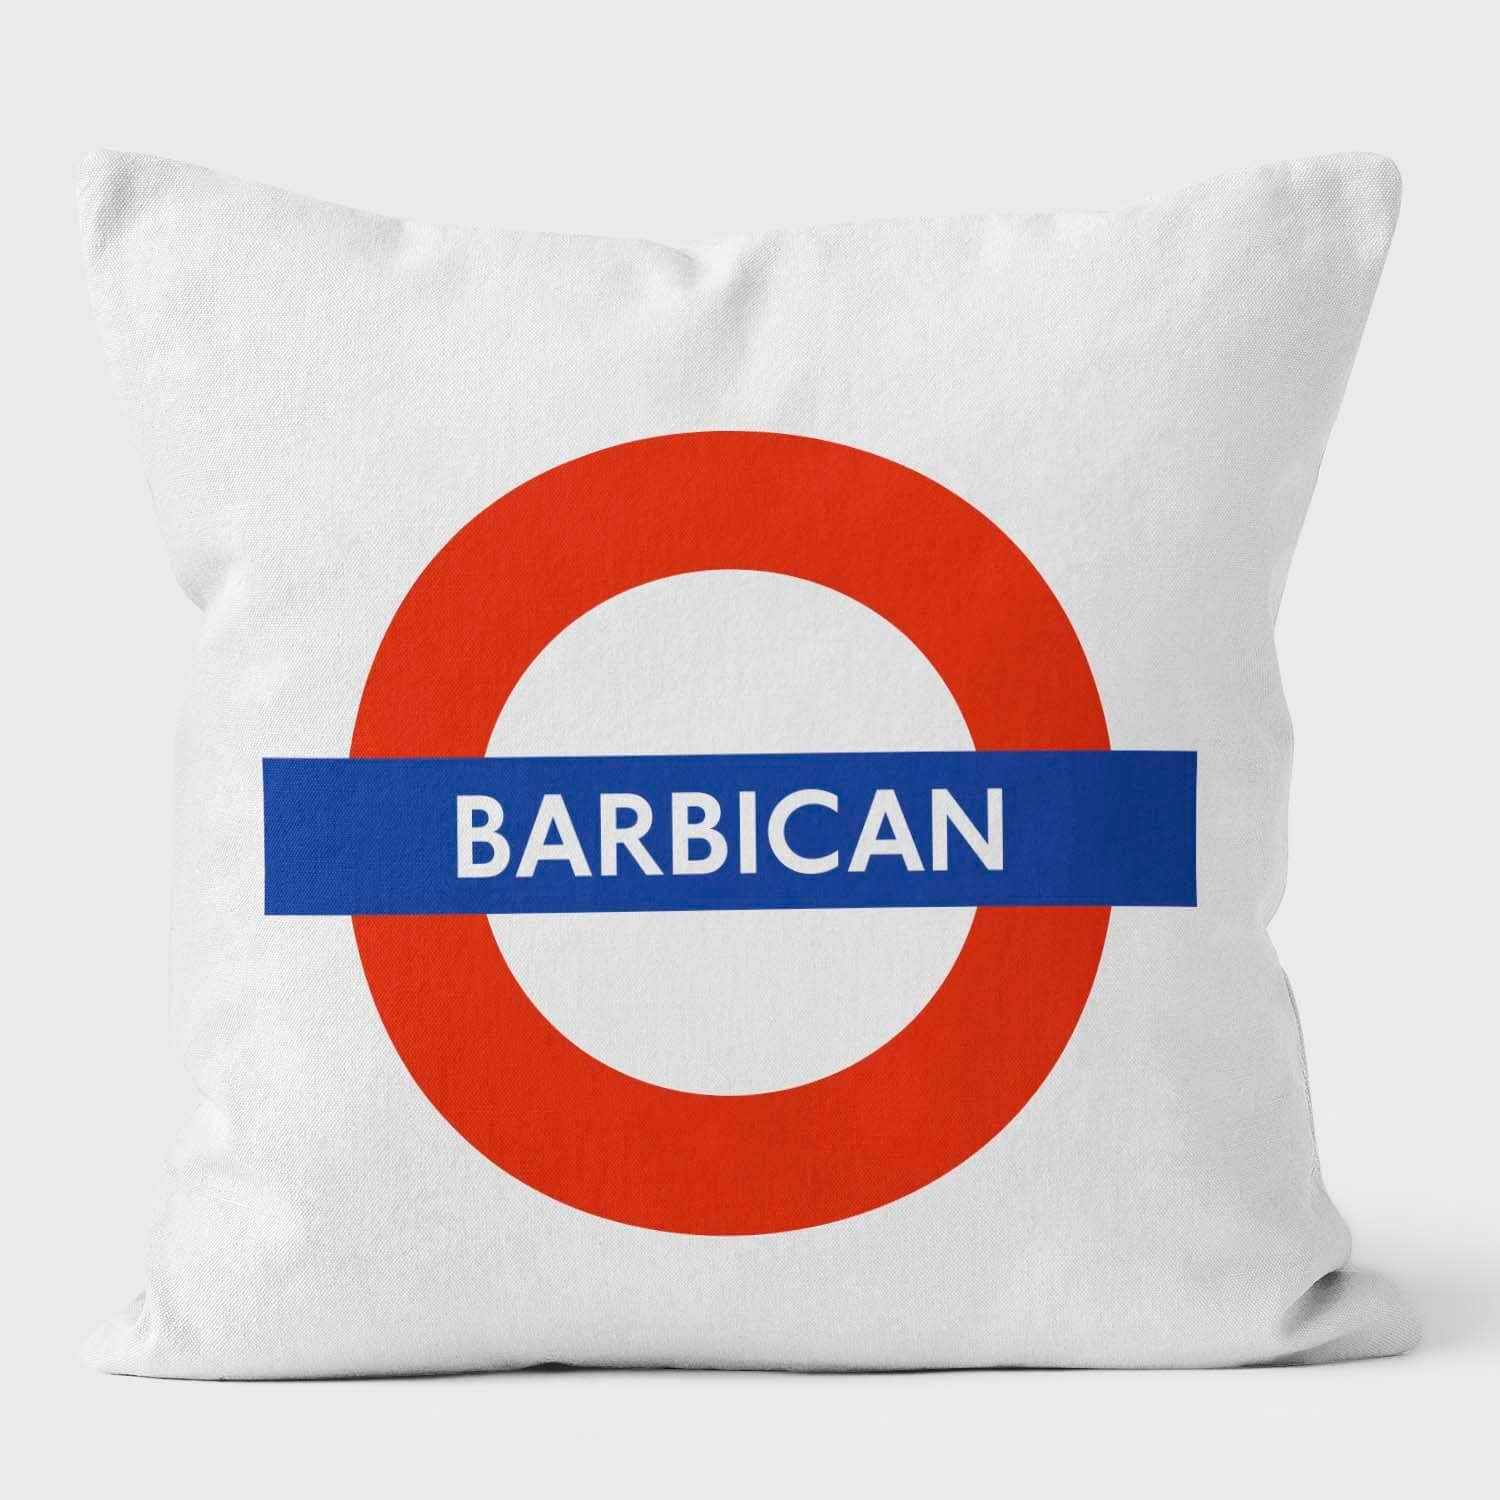 Barbican London Underground Tube Station Roundel Cushion - Handmade Cushions UK - WeLoveCushions